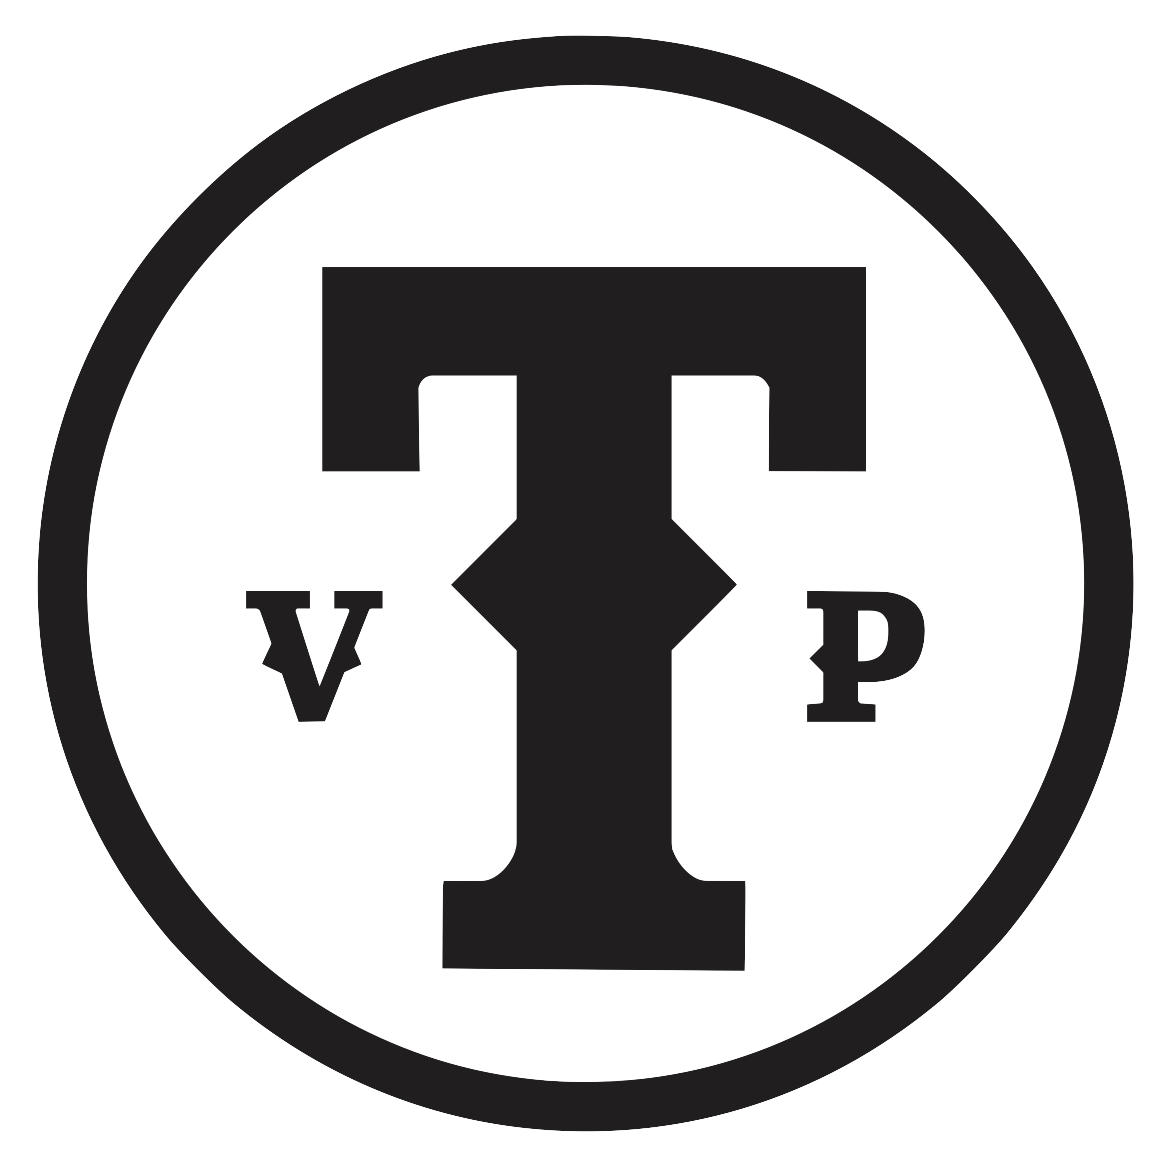 VTP Logo